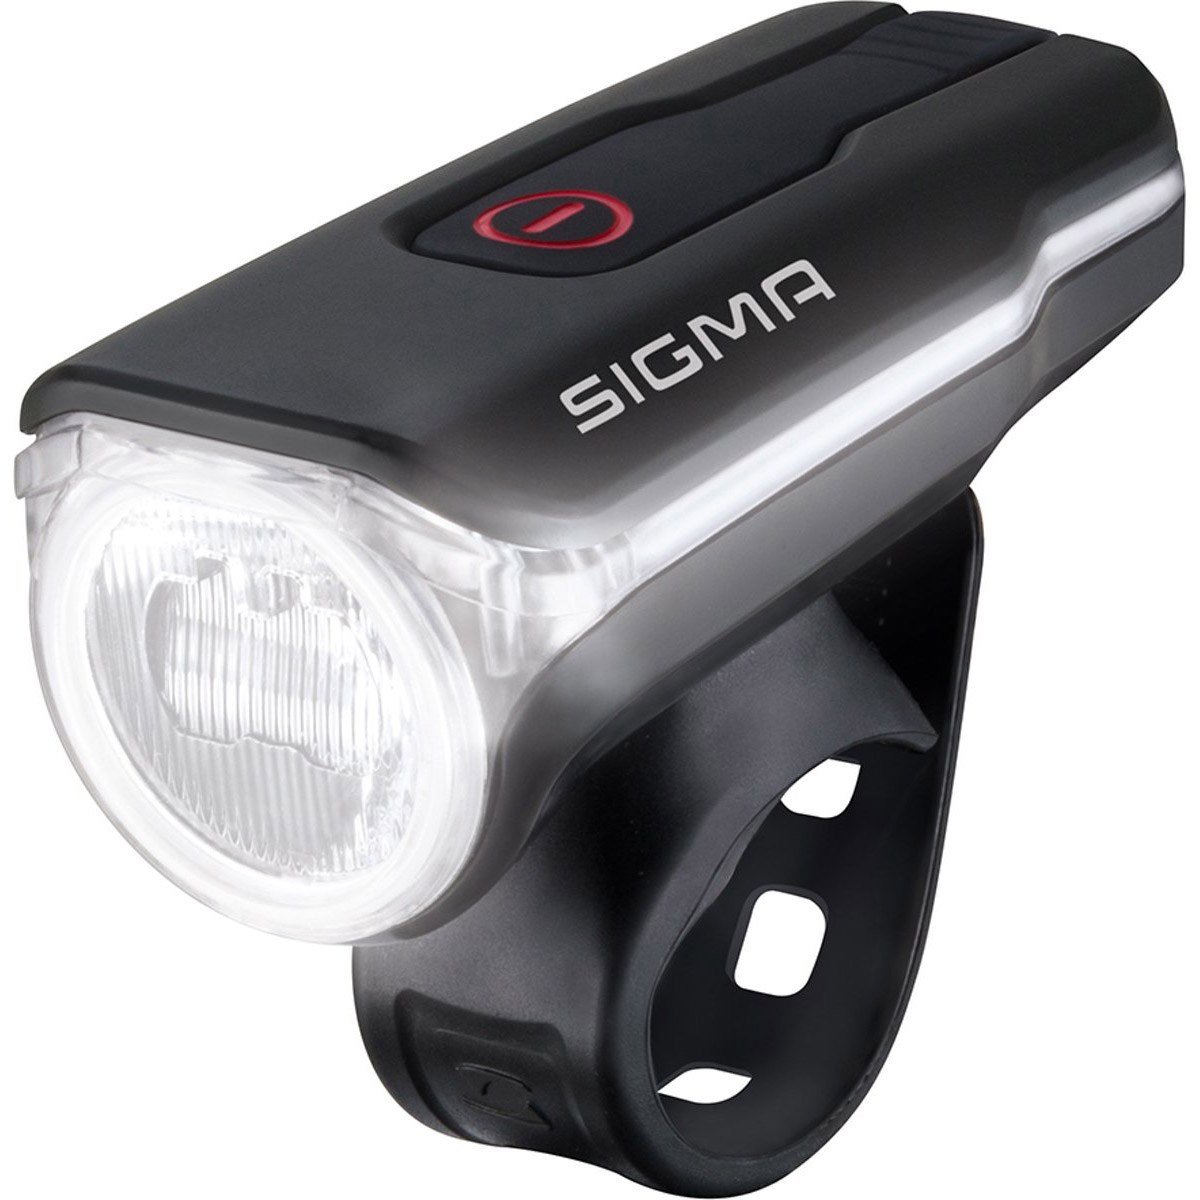 Sigma Aura 60 lux koplamp LED USB-laadbaar 17700